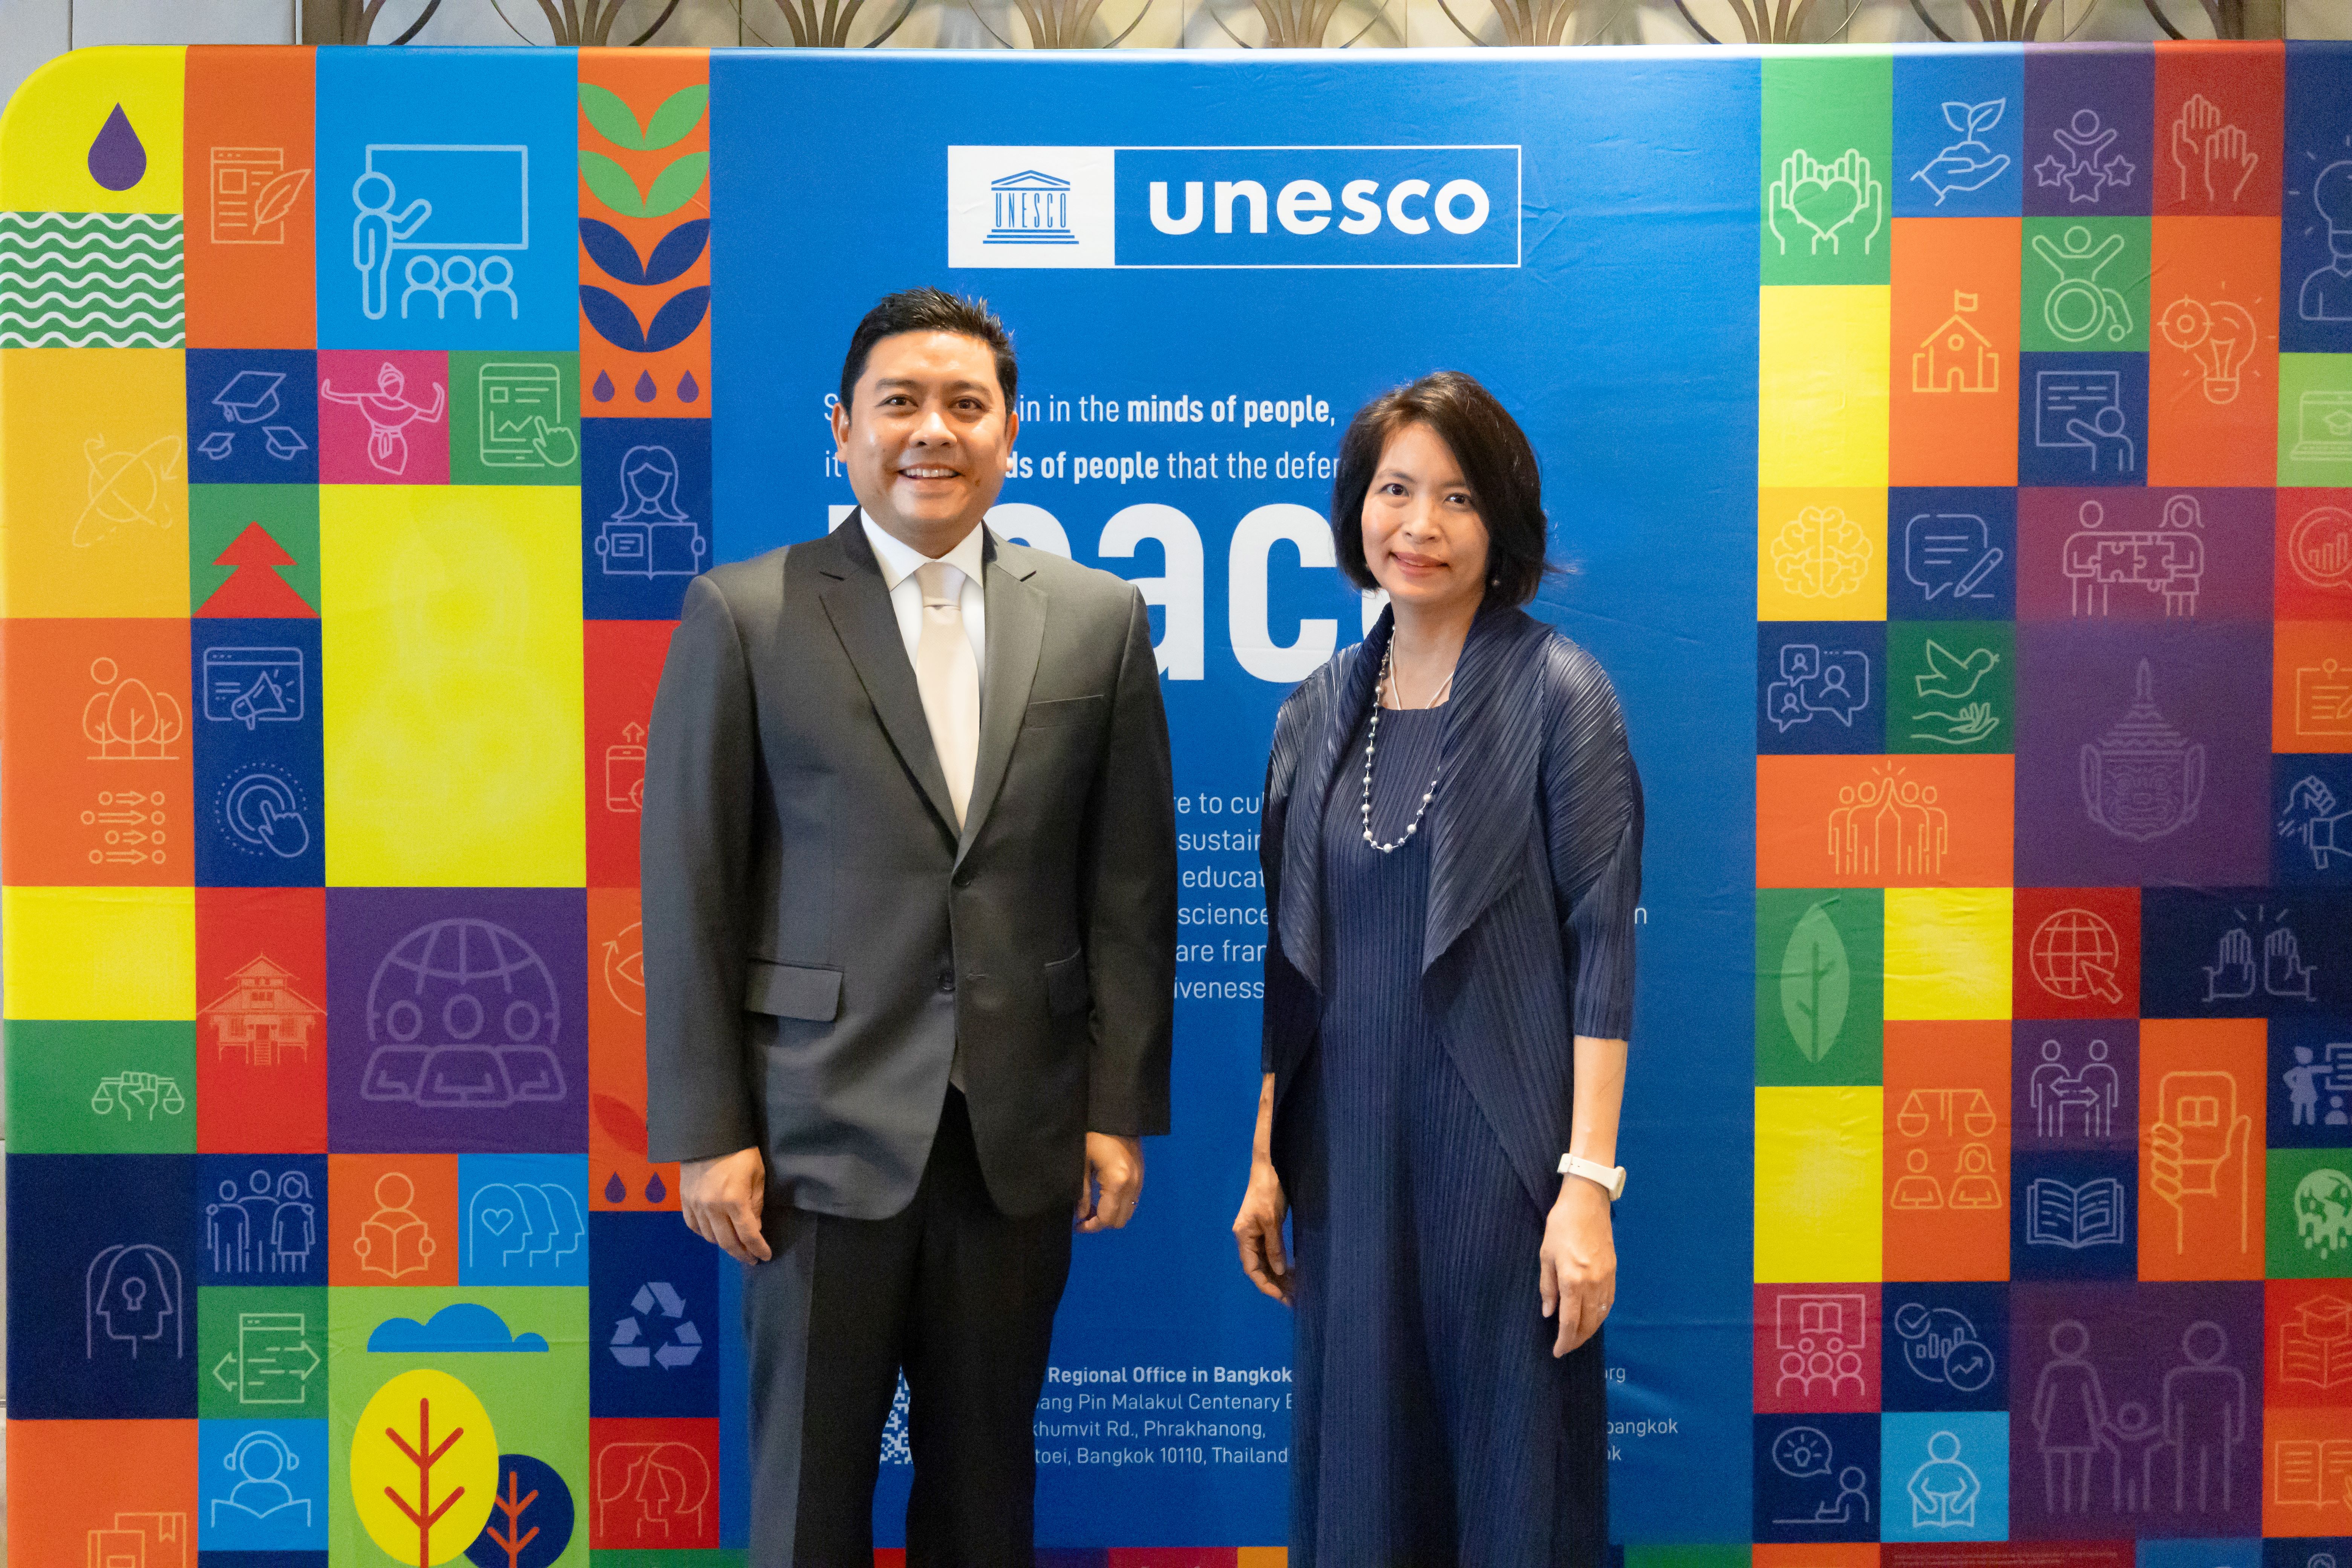 ONYX Hospitality Group cam kết hợp tác lâu dài với UNESCO vì sự bền vững về văn hóa